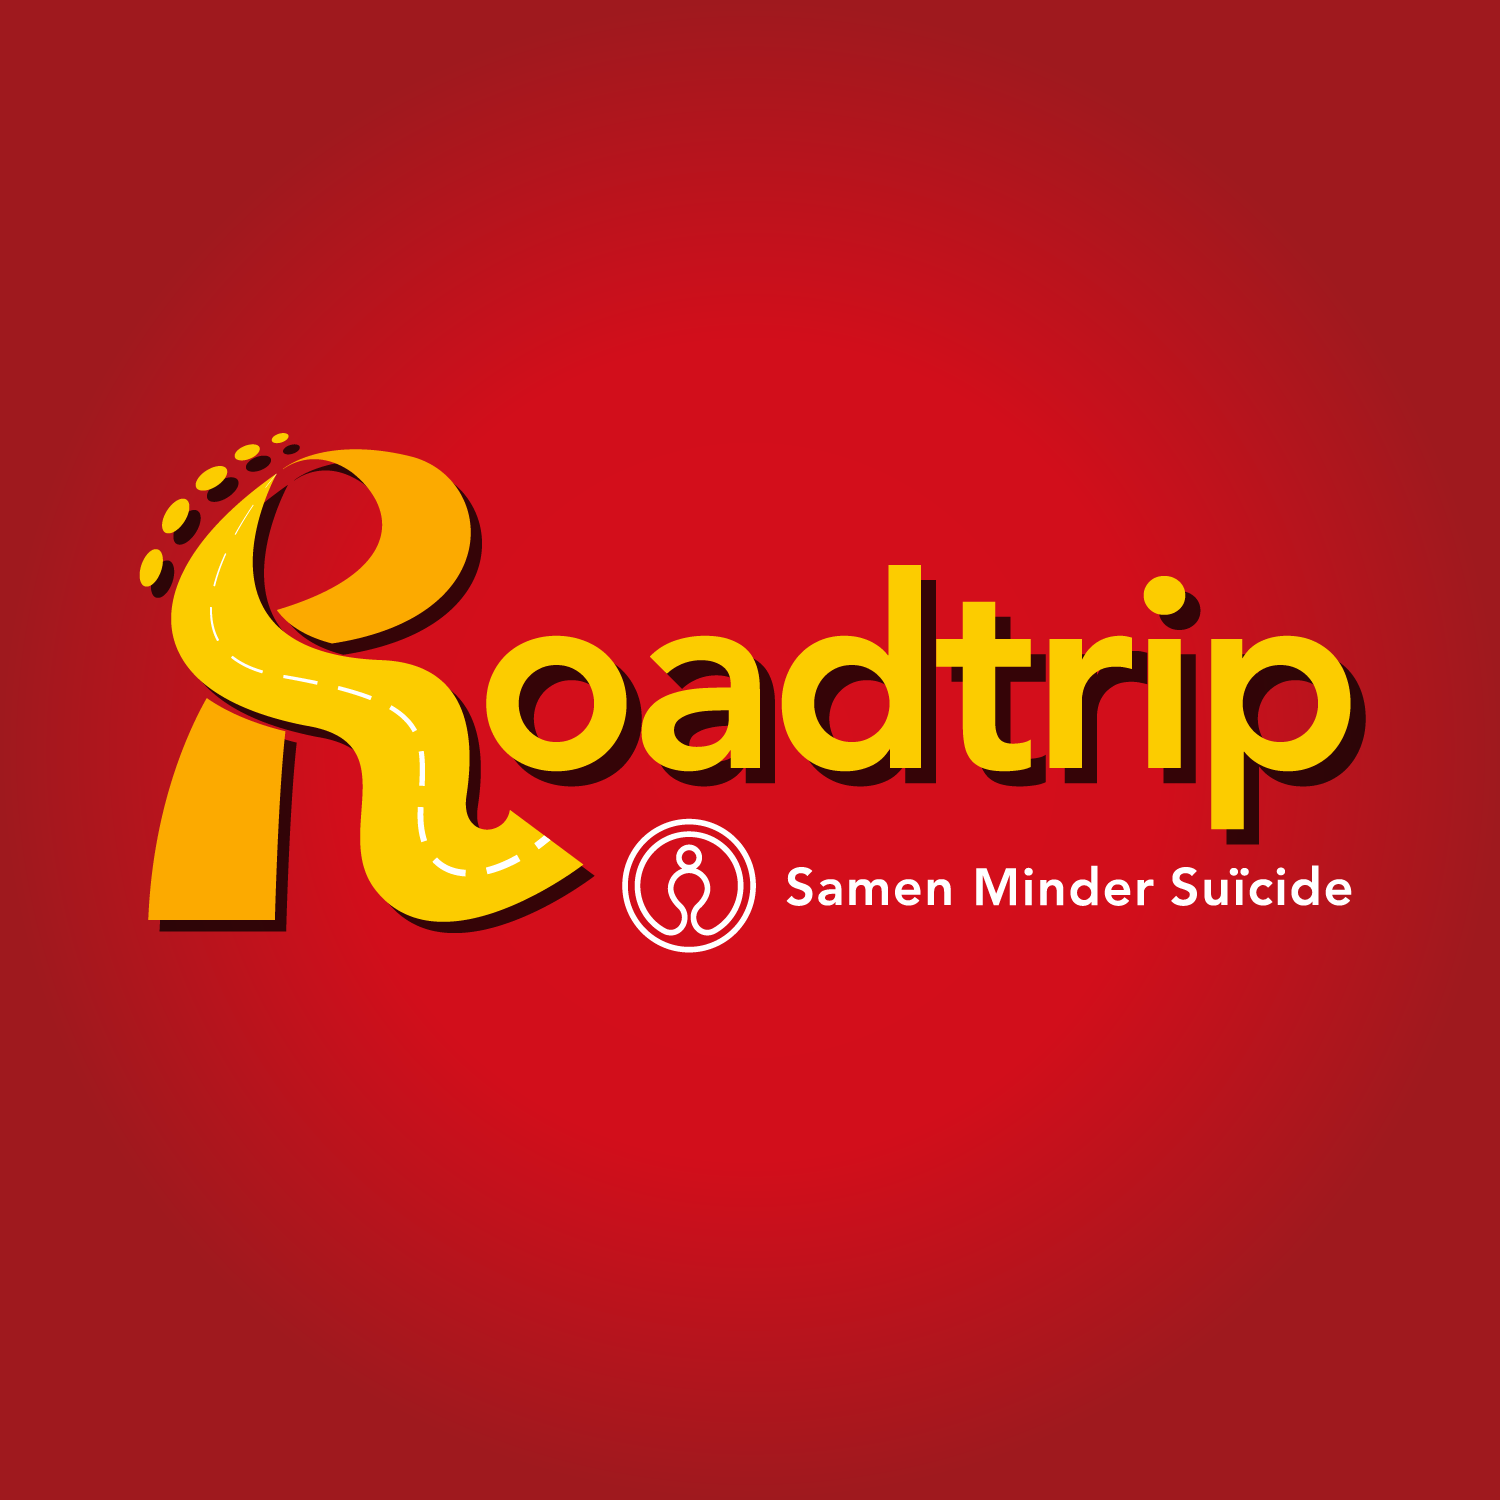 Roadtrip #5 In gesprek met GIMD over ‘de vraag’ stellen aan een cliënt wanneer er vermoedens zijn dat deze aan zelfdoding denkt